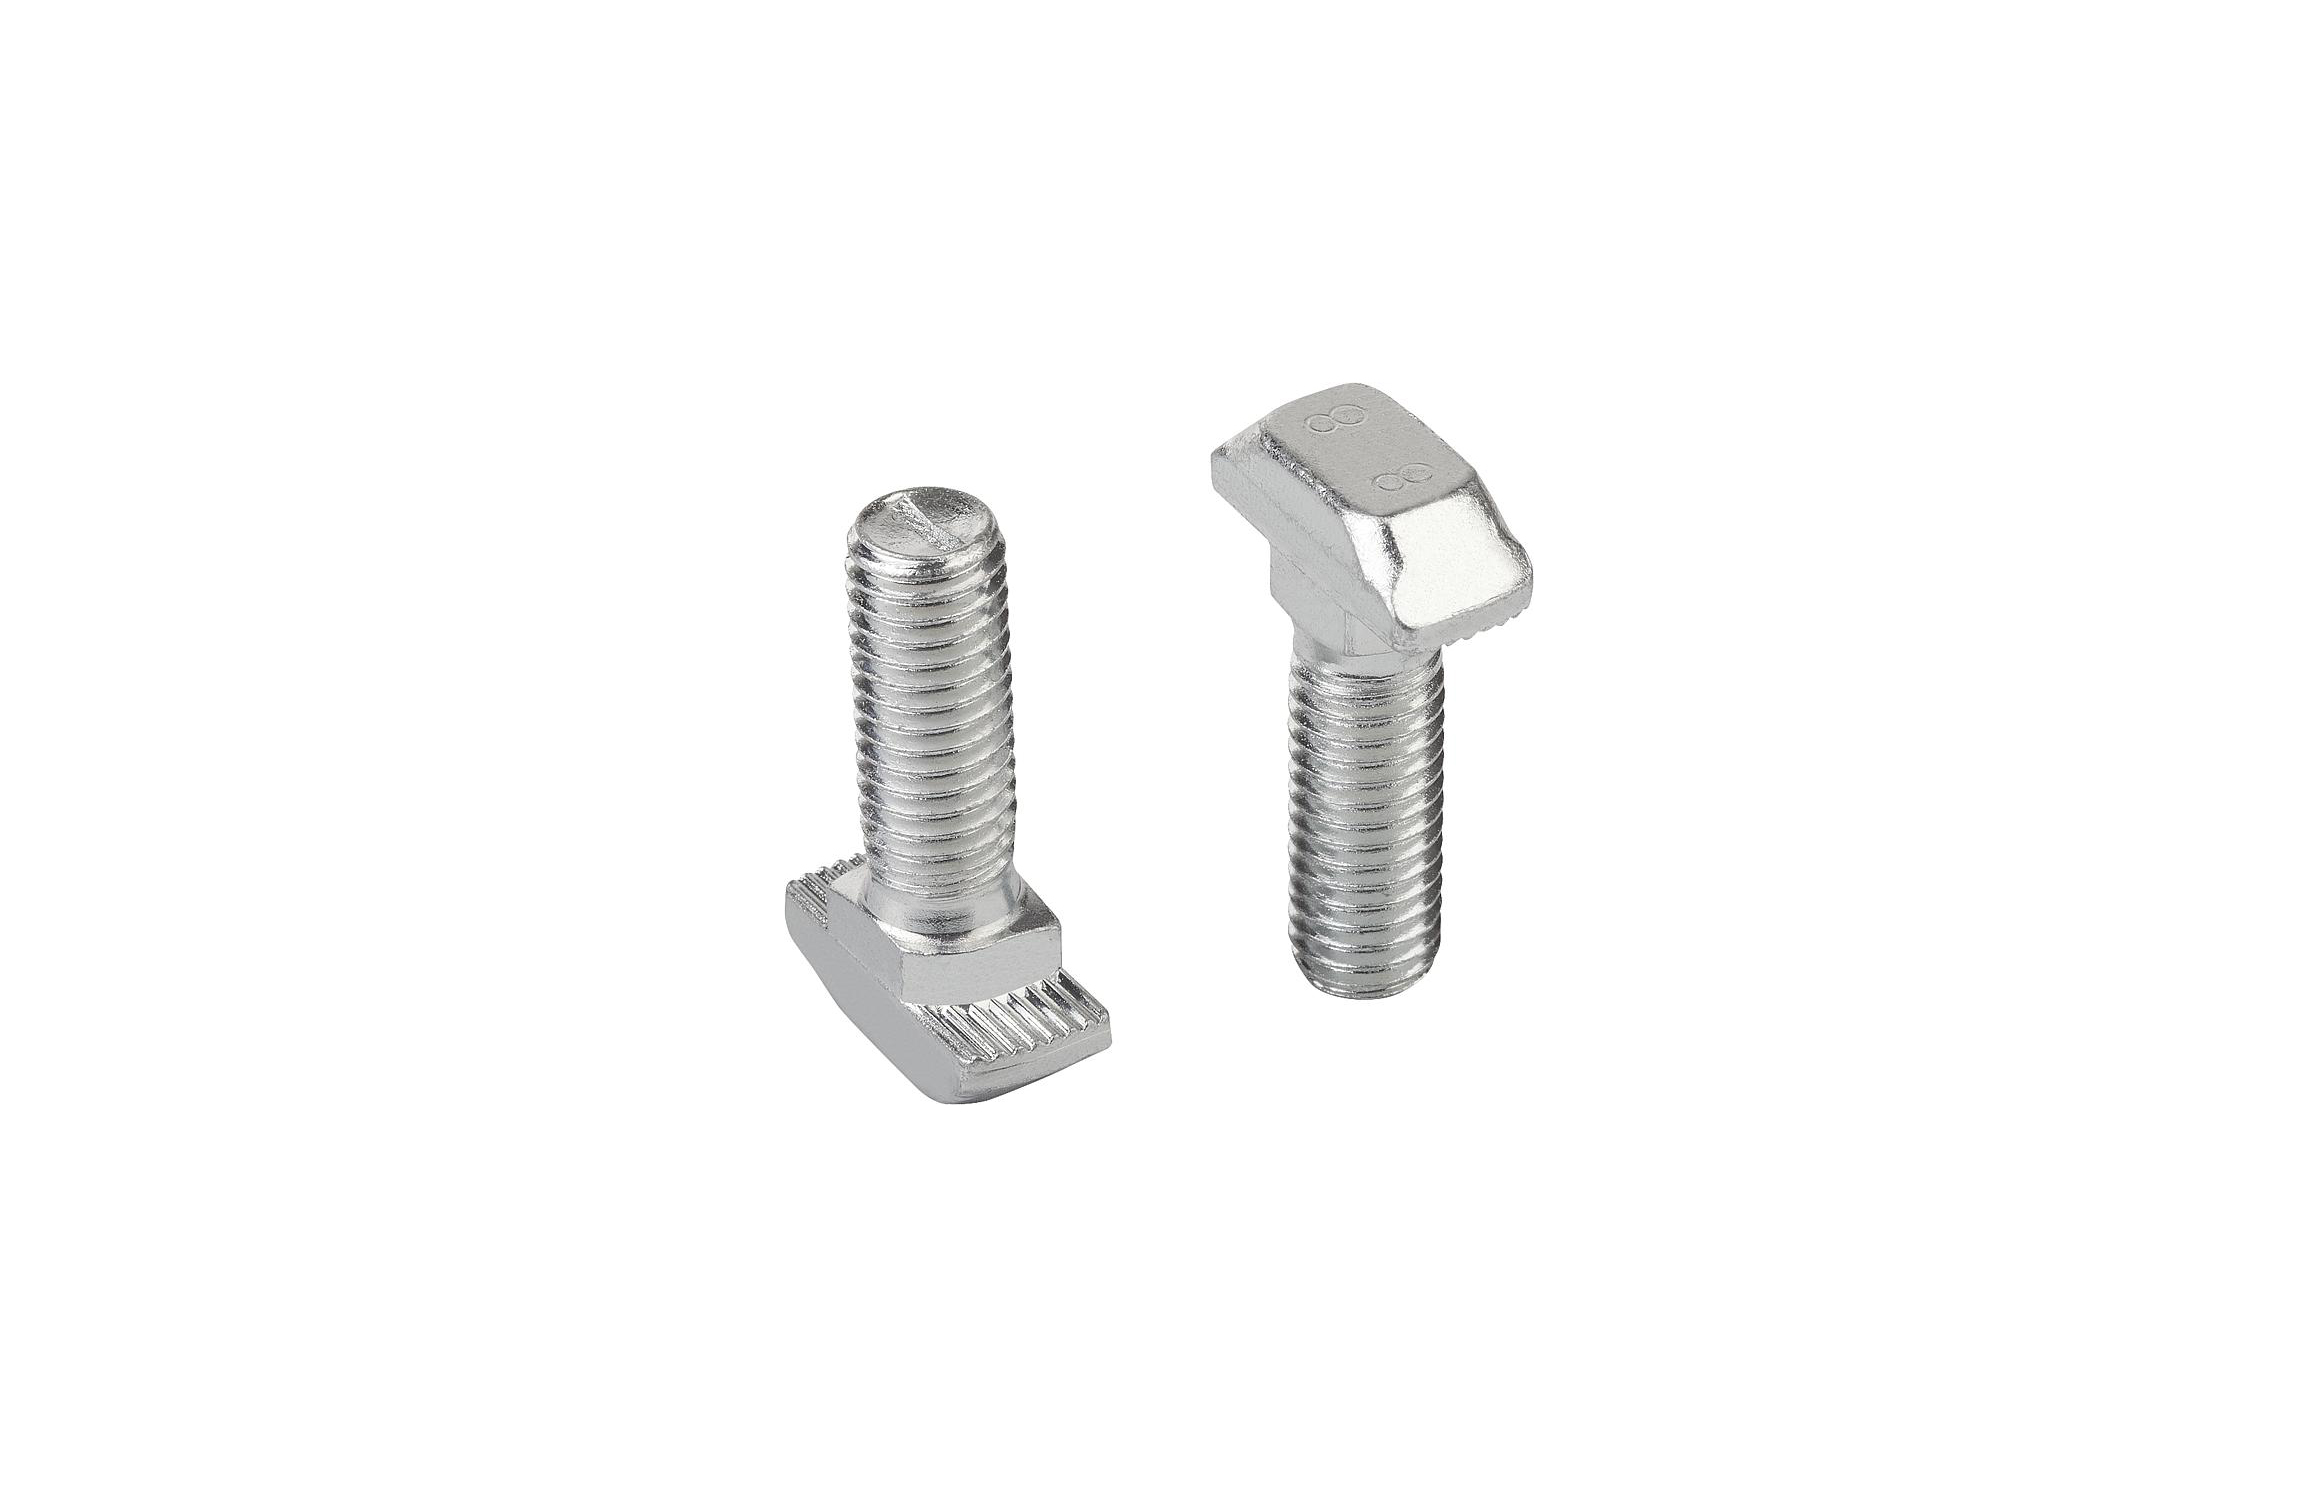 K1029 Hammer-head screws